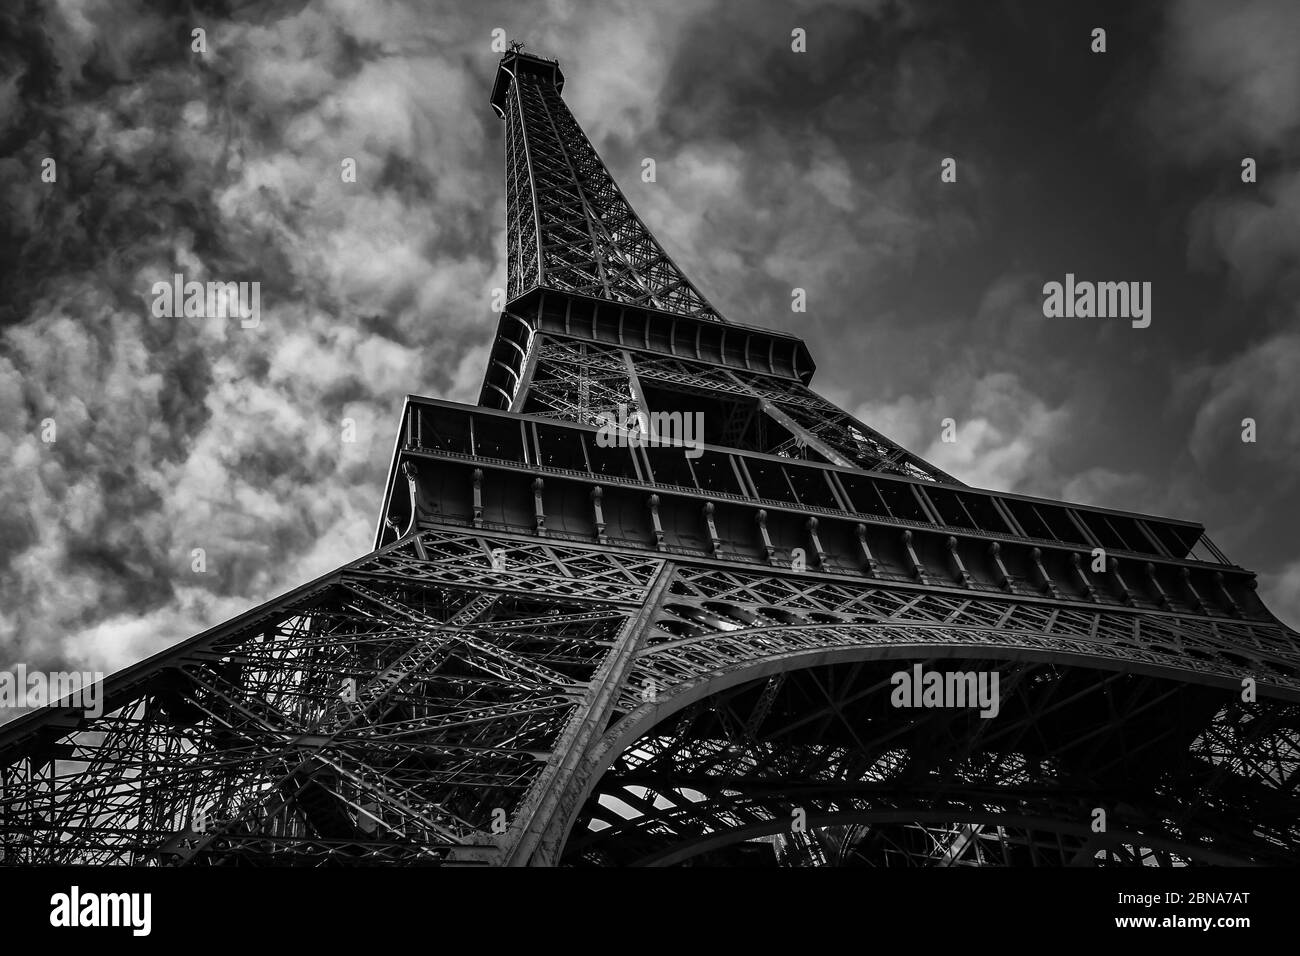 Un rendu noir et blanc spectaculaire de la Tour Eiffel vu de dessous directement à Paris, France. Banque D'Images